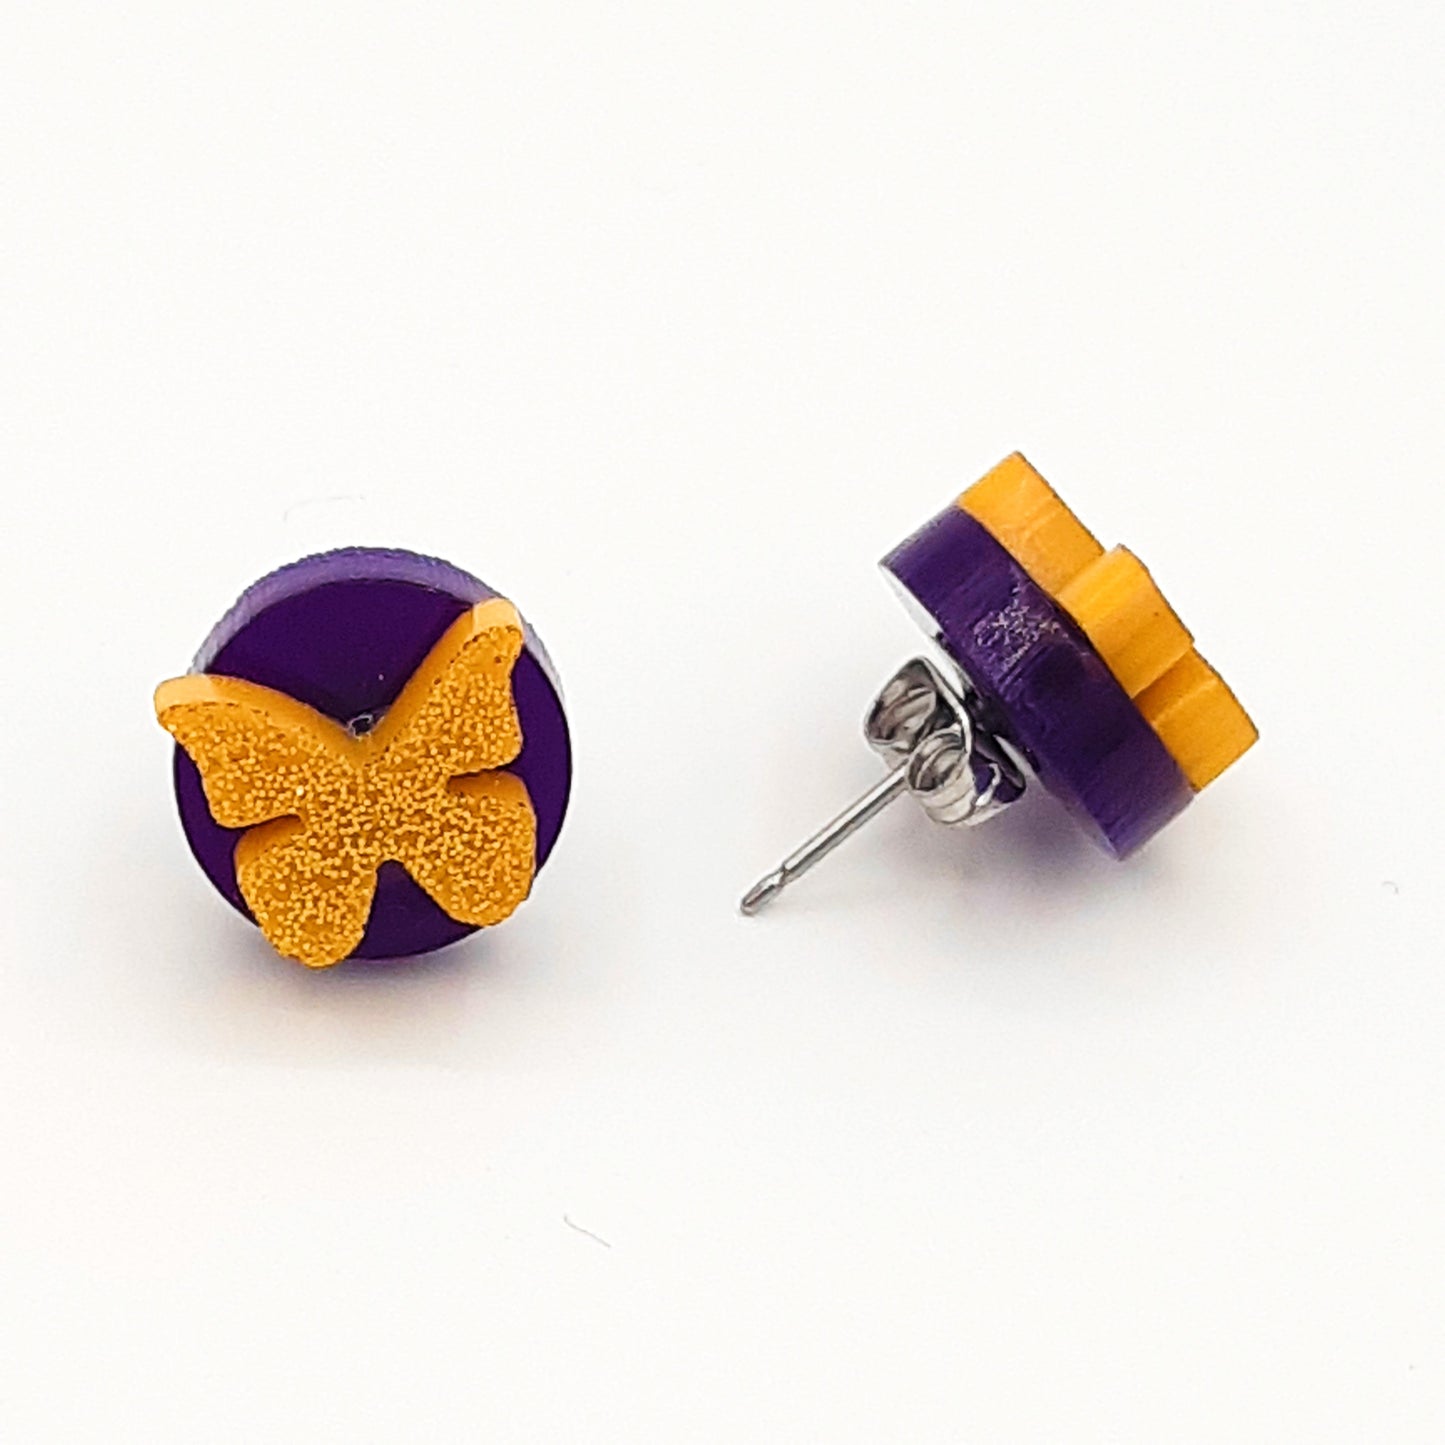 Butterfly laser cut acrylic earrings - purple & gold glitter